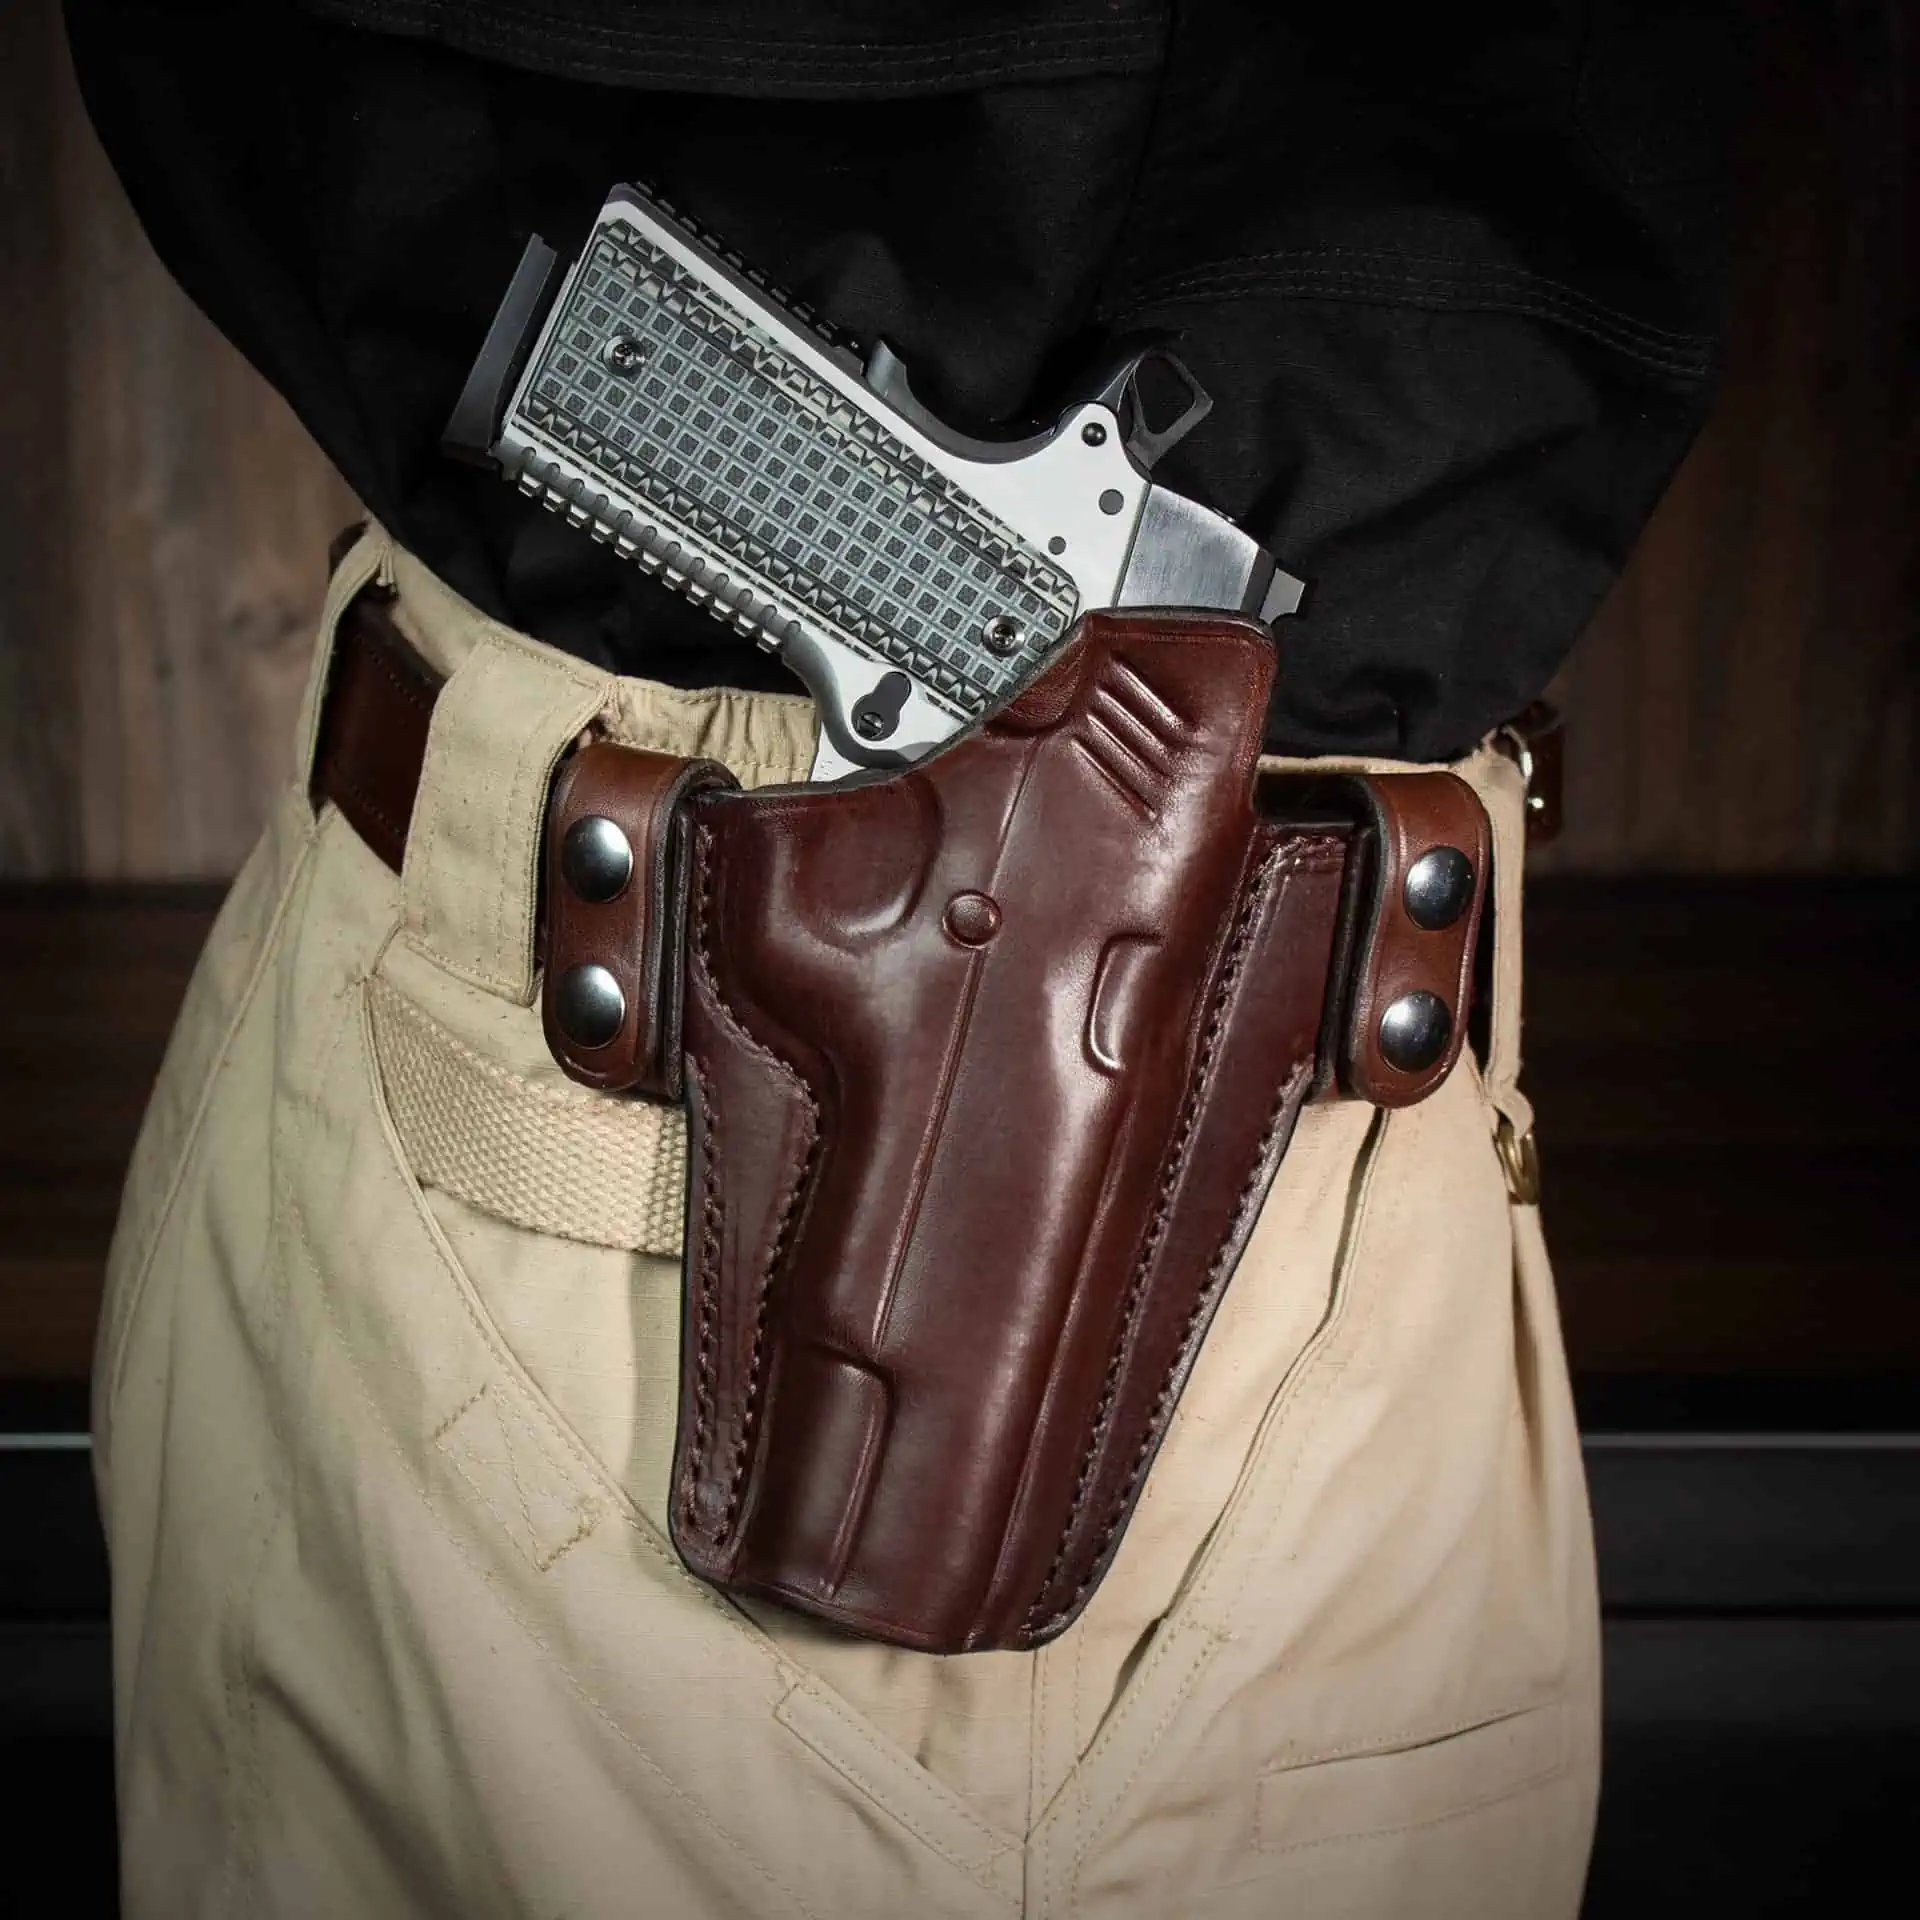 Glock 19 Shoulder Holster Model X400 - Kirkpatrick Leather Holsters